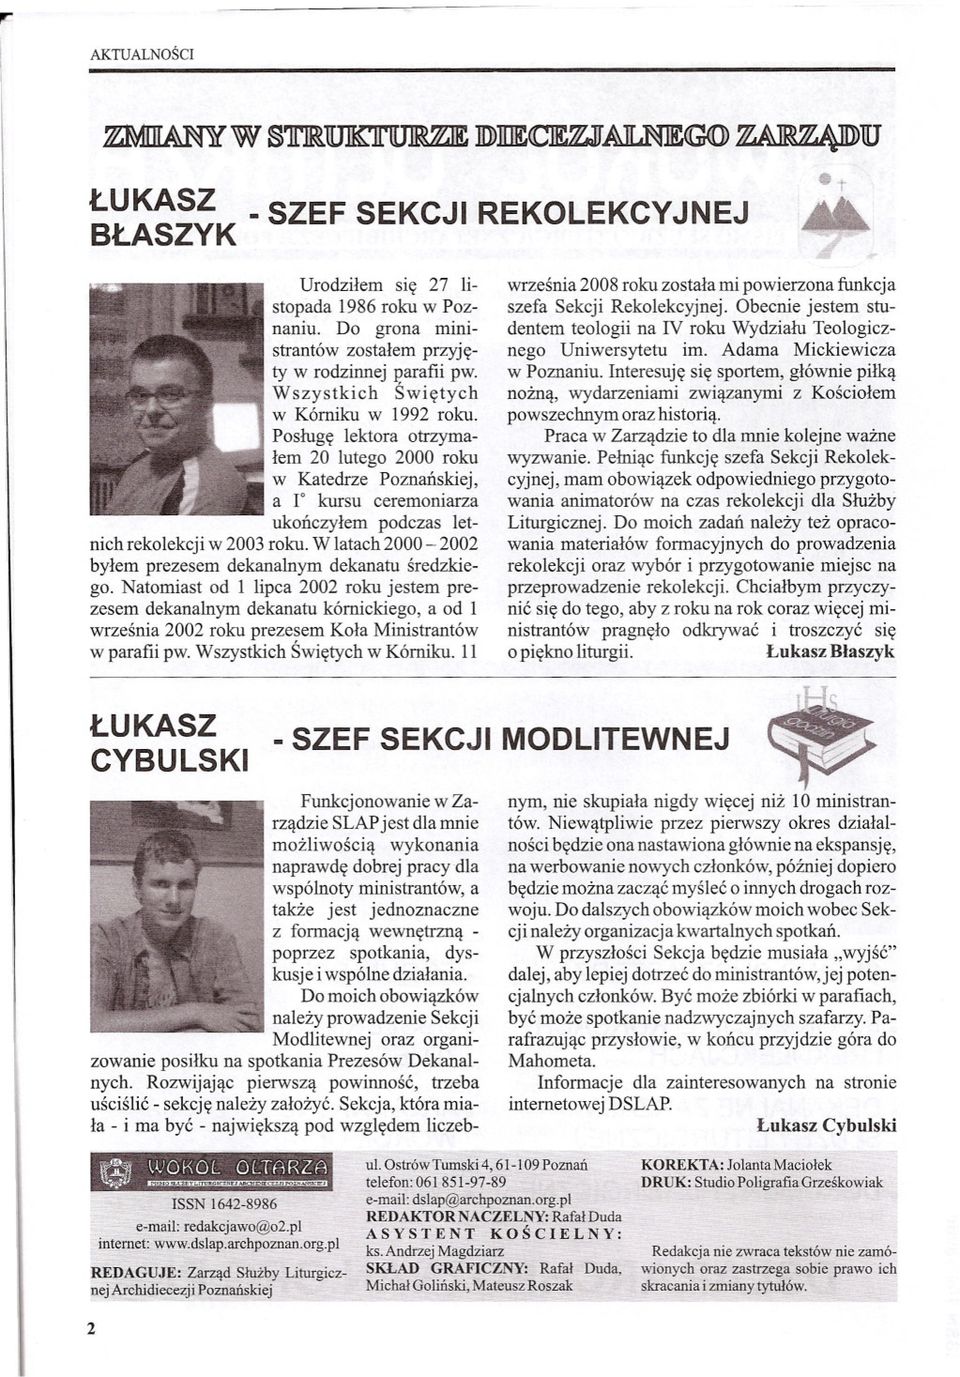 W latach 2000-2002 bylem prezesem dekanalnym dekanatu sredzkiego.